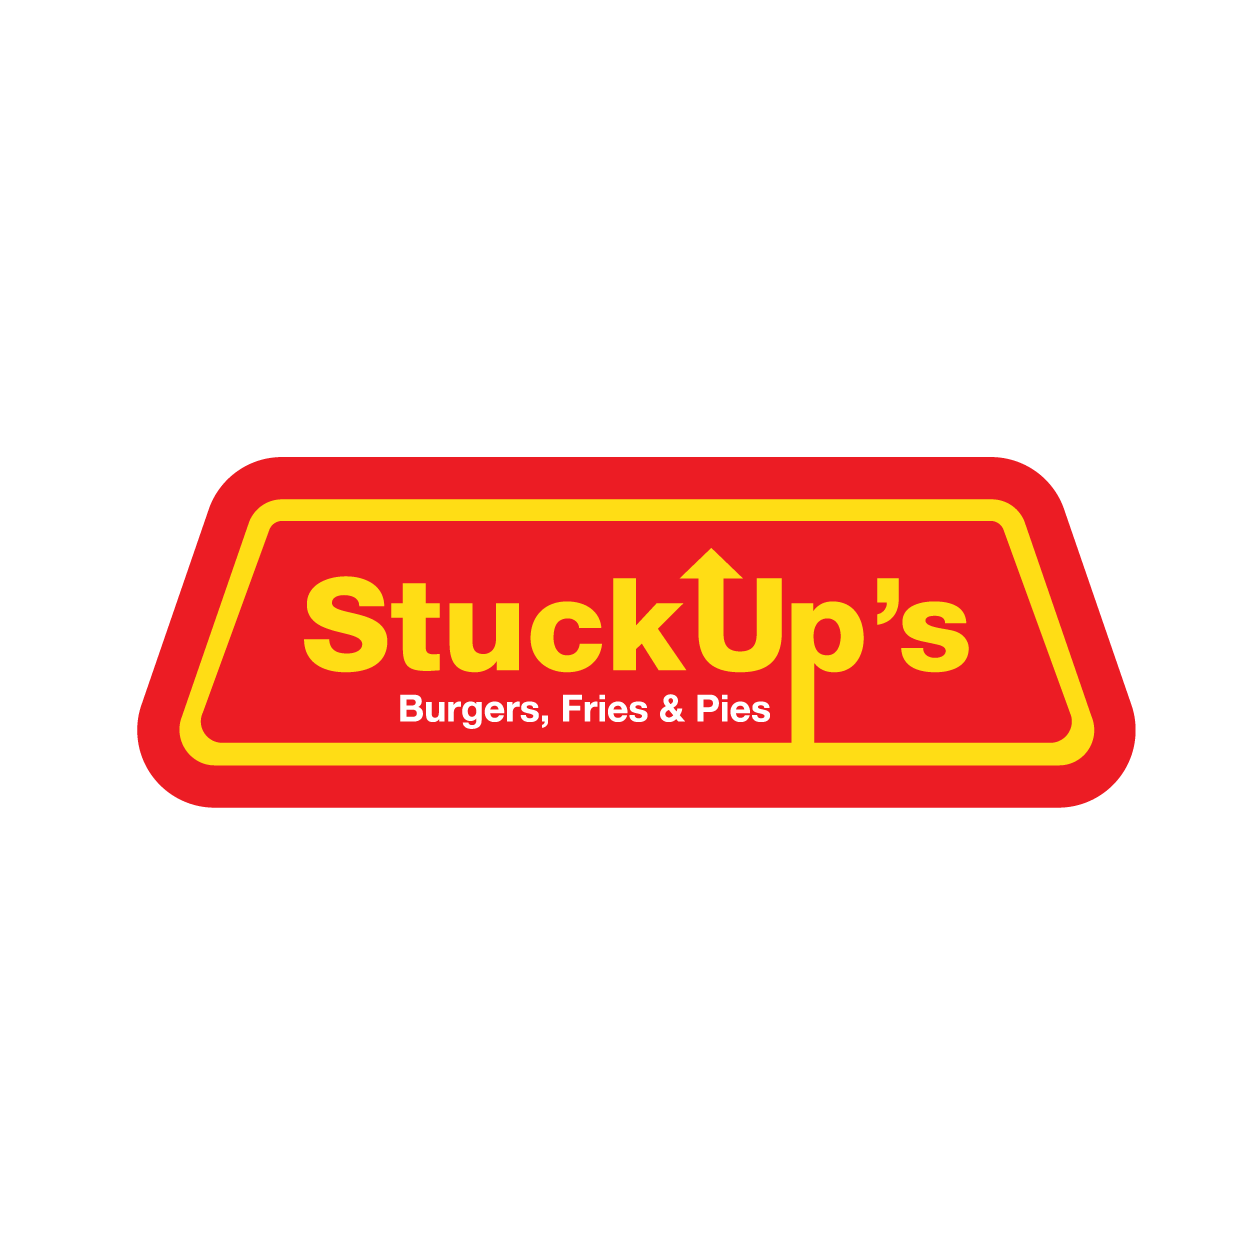 StuckUp's Burgers, Fries & Pies